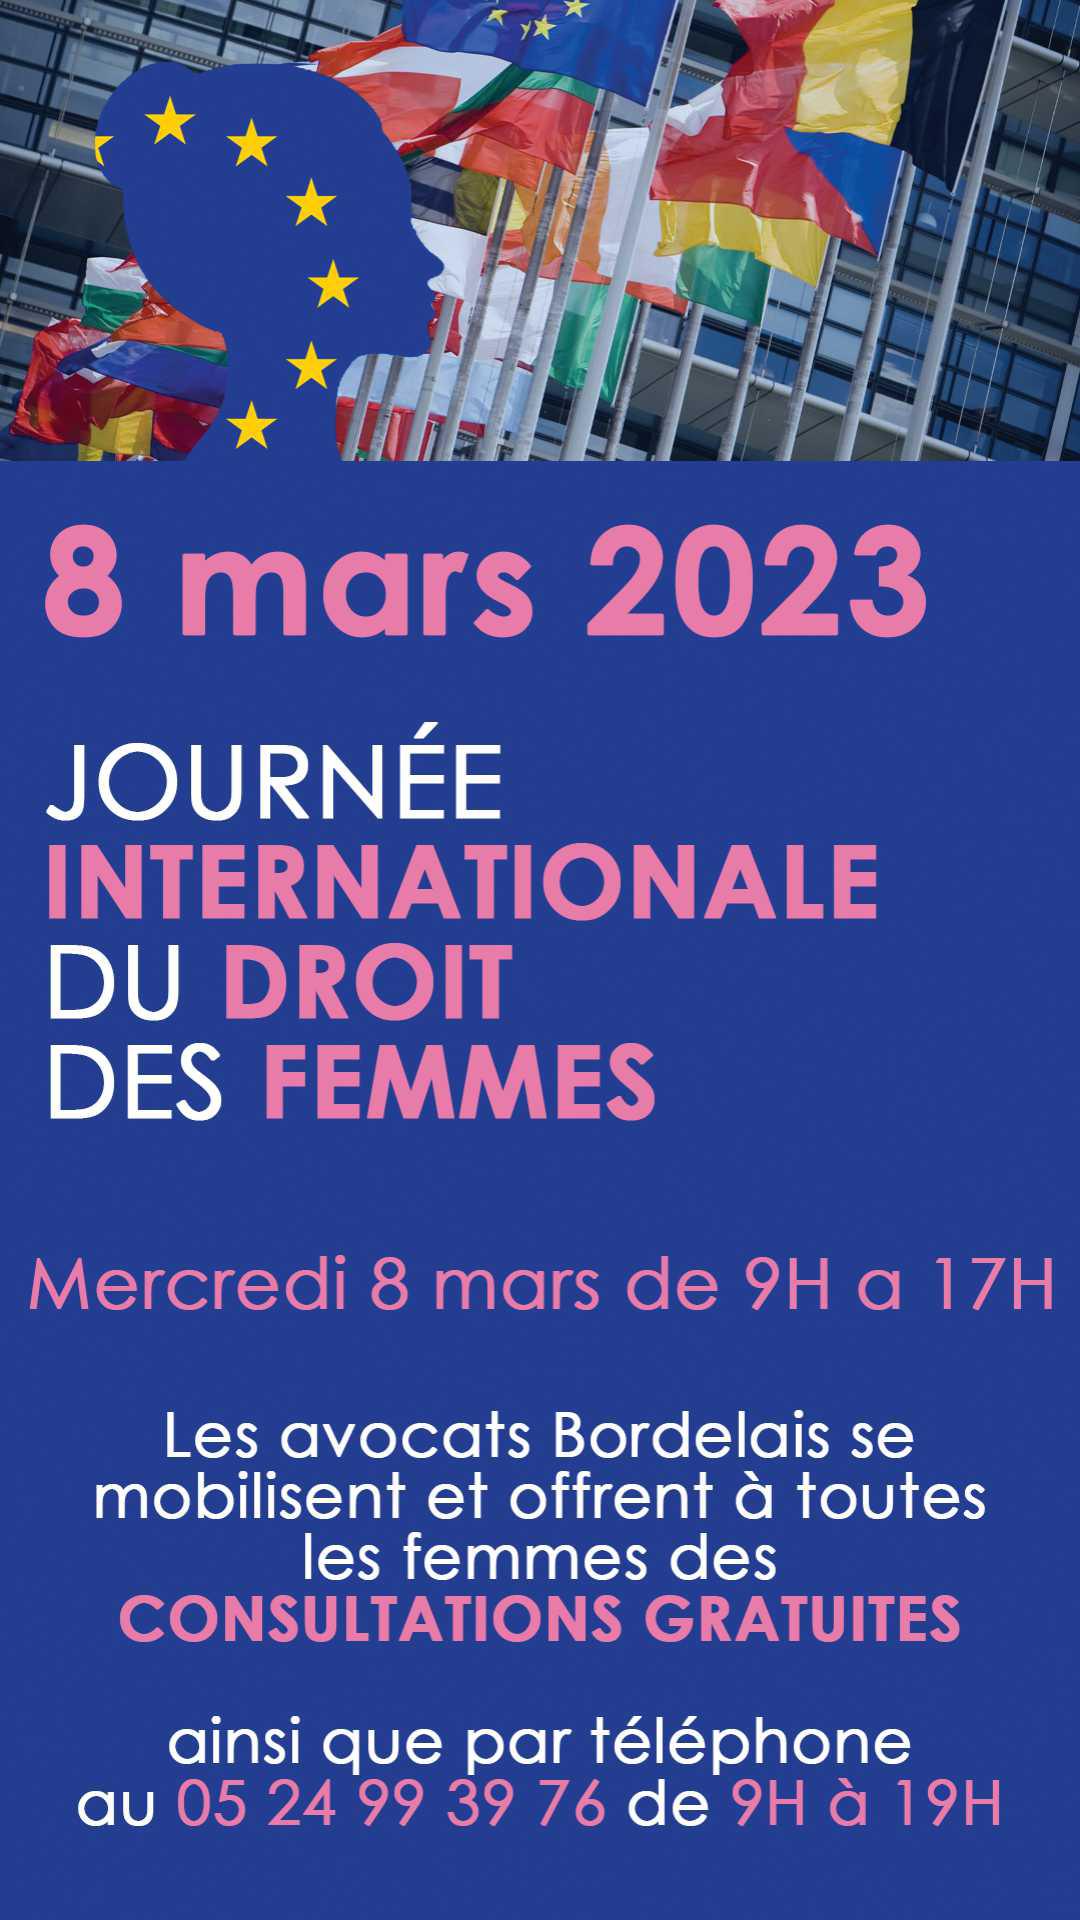 Mercredi 8 mars 2023 : journée internationale du droit des femmes